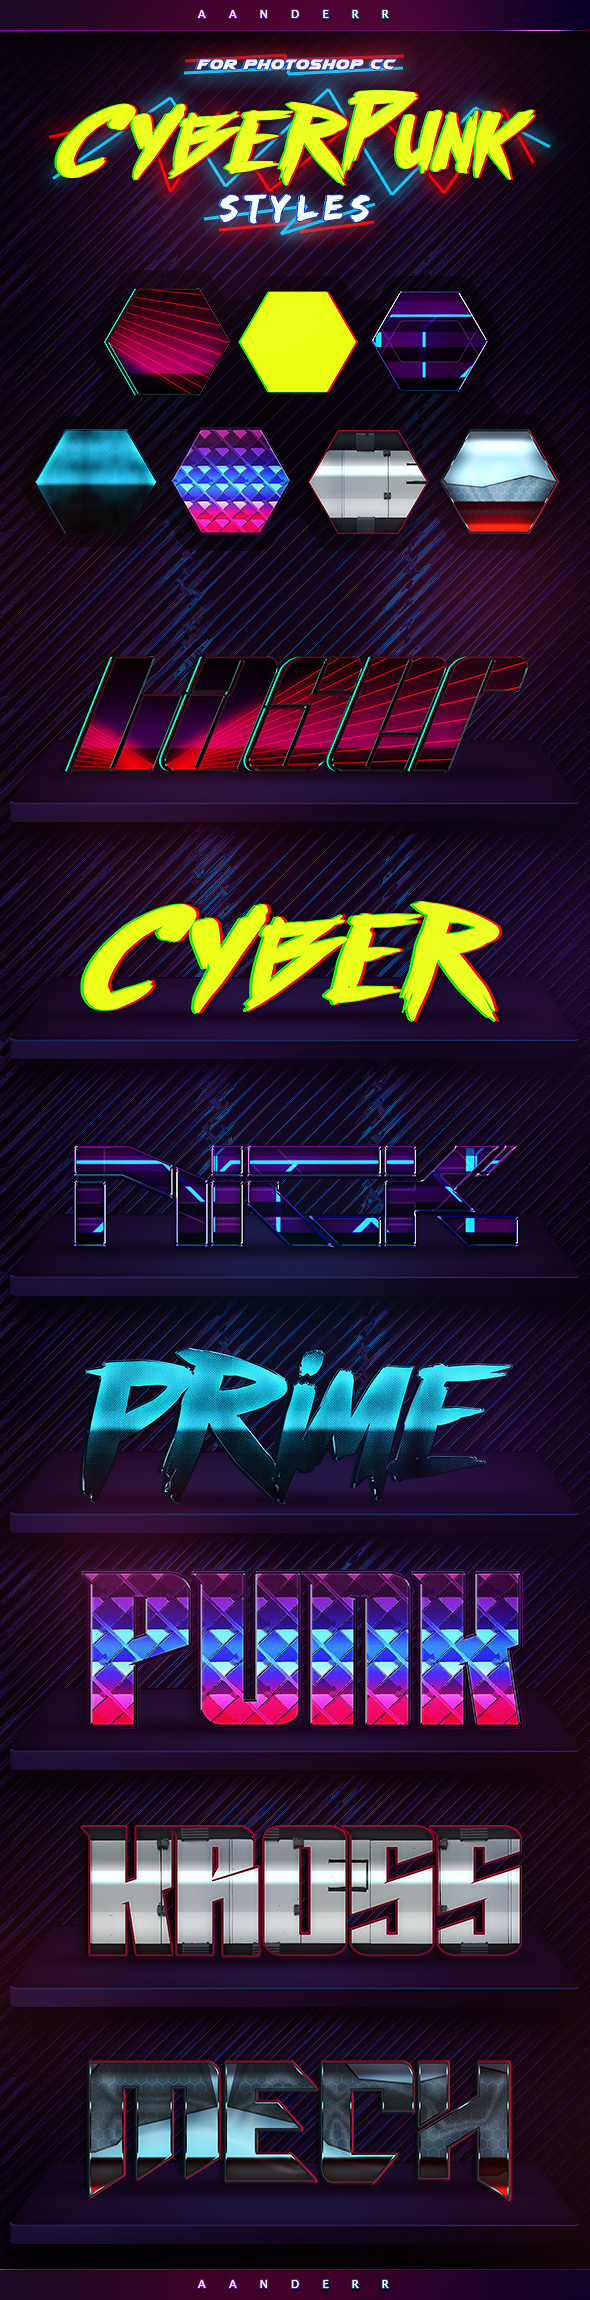 Cyberpunk Styles